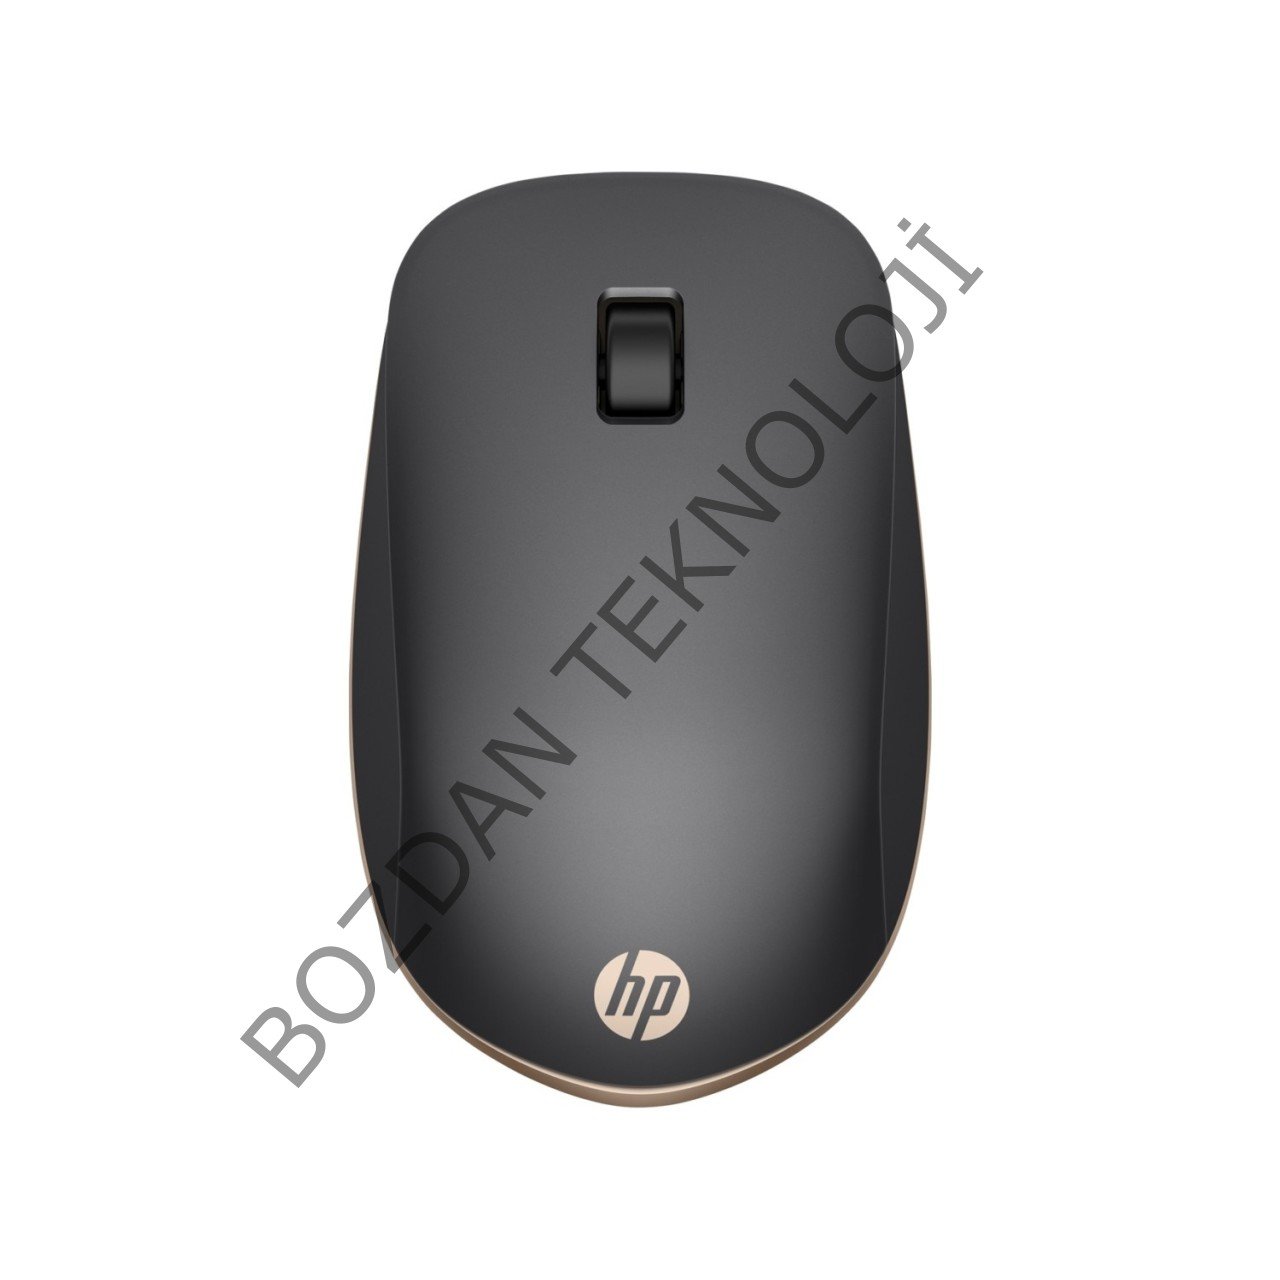 HP Z5000 Bluetooth Gümüş Mouse W2Q00AA